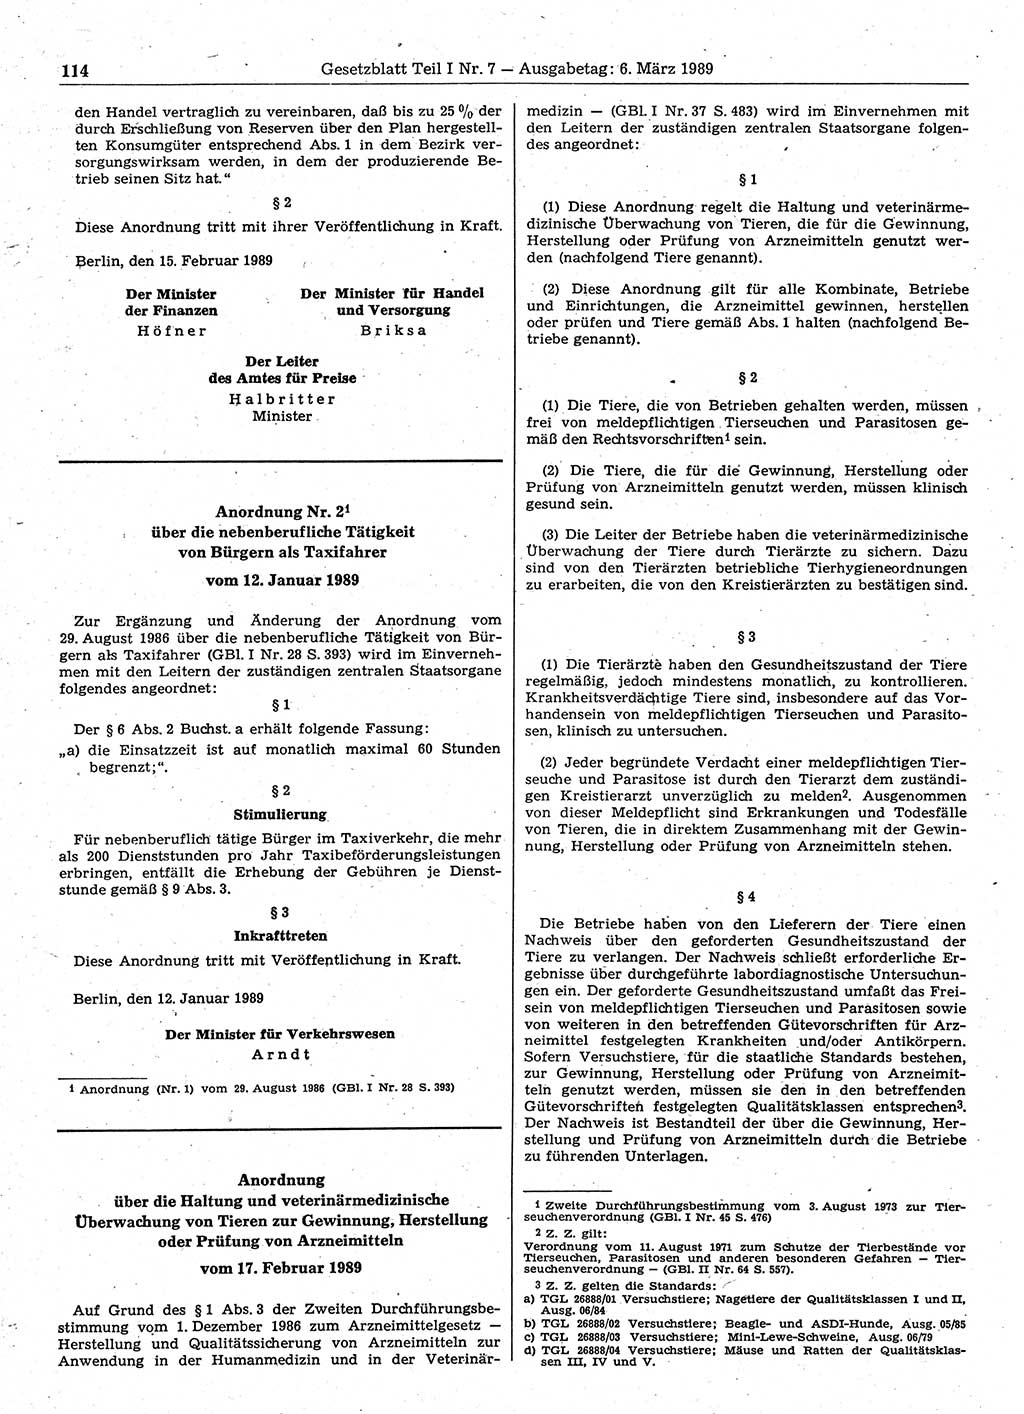 Gesetzblatt (GBl.) der Deutschen Demokratischen Republik (DDR) Teil Ⅰ 1989, Seite 114 (GBl. DDR Ⅰ 1989, S. 114)